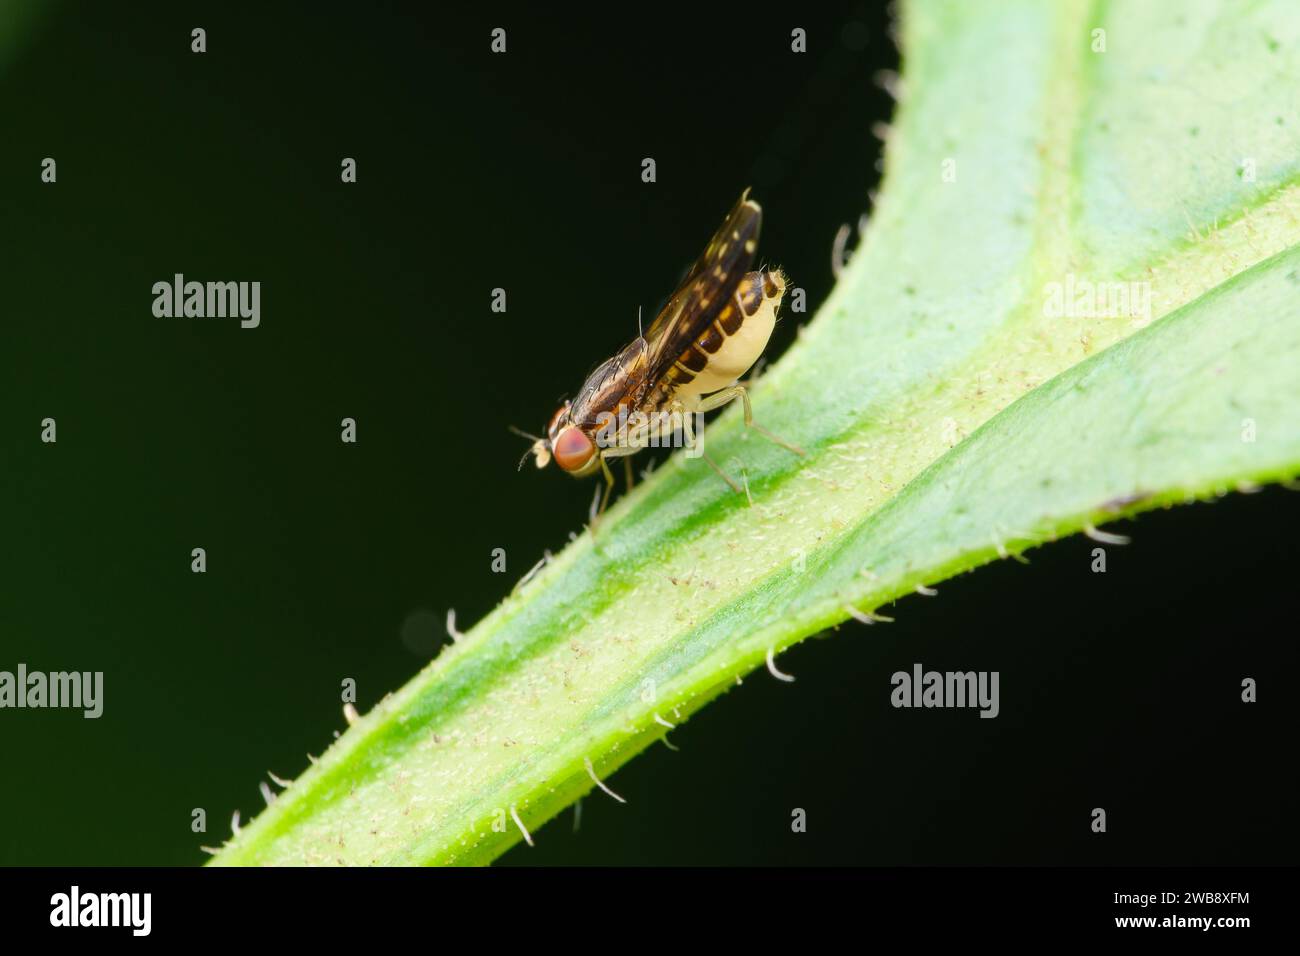 Une vue latérale détaillée d'une mouche fruitière Drosophilidae perchée sur une feuille, avec ses traits distinctifs en évidence, dans la verdure luxuriante de Pune. Banque D'Images